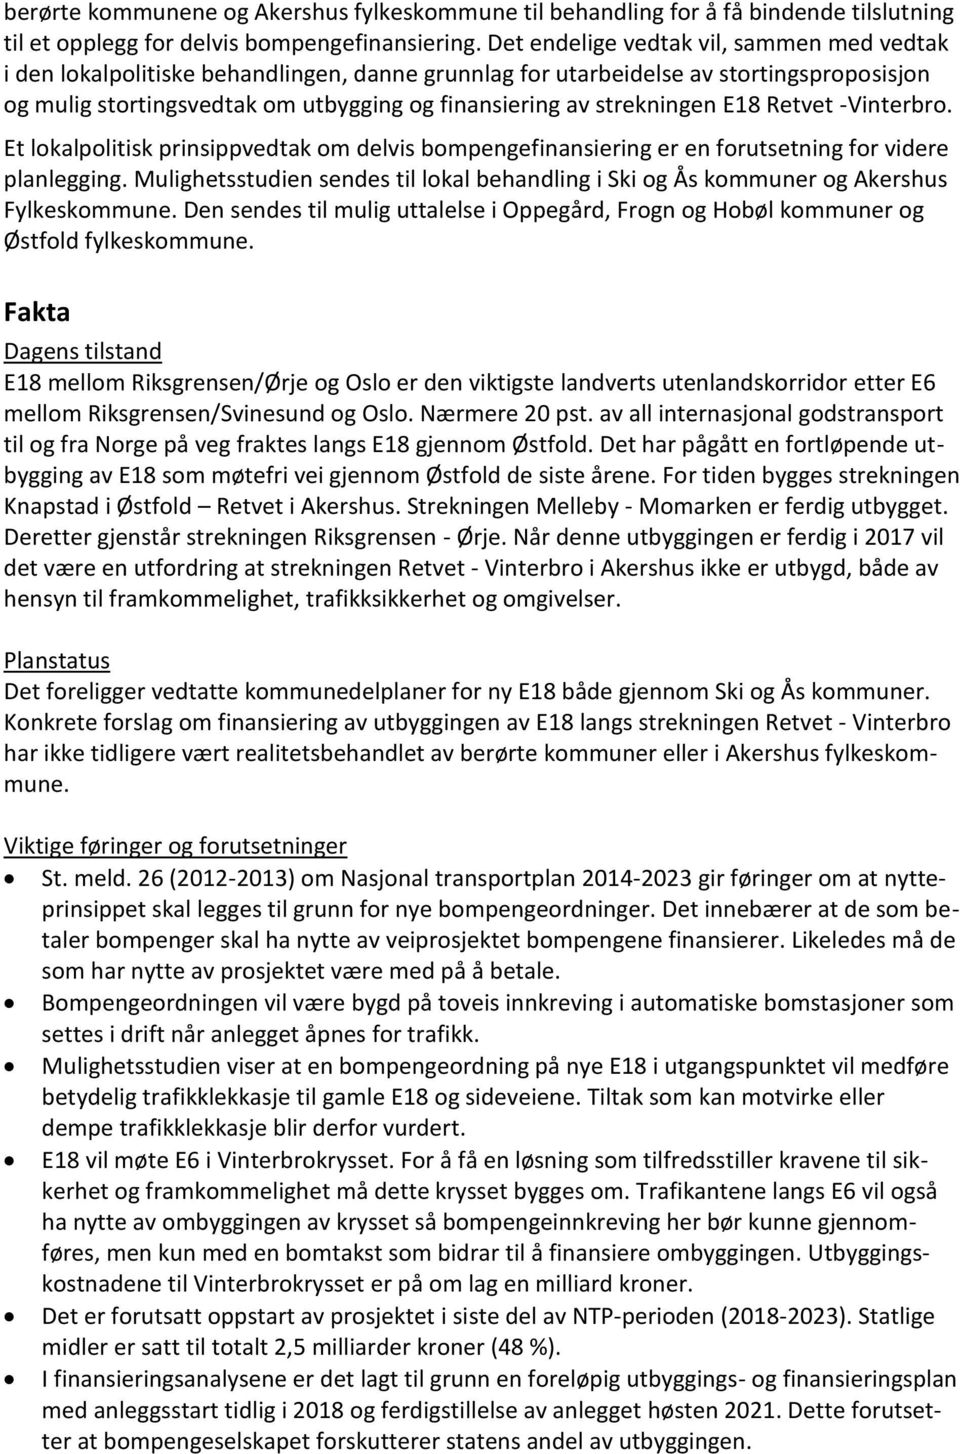 strekningen E18 Retvet -Vinterbro. Et lokalpolitisk prinsippvedtak om delvis bompengefinansiering er en forutsetning for videre planlegging.